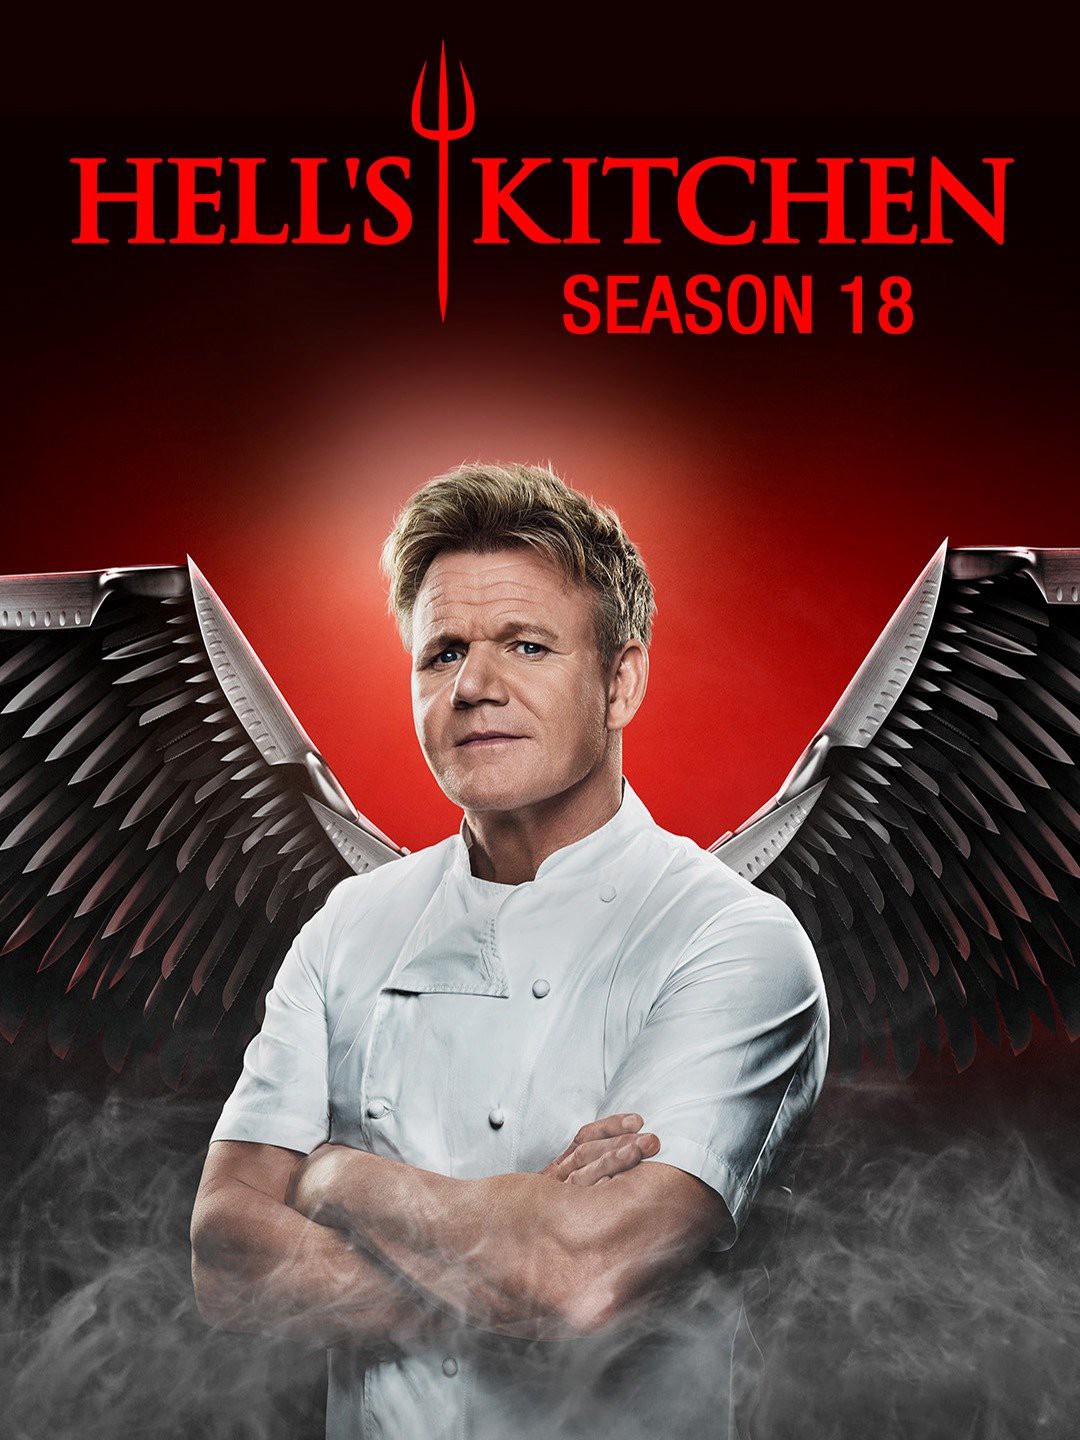 Nhà bếp địa ngục (Phần 18) - Hell's Kitchen (Season 18) (2018)